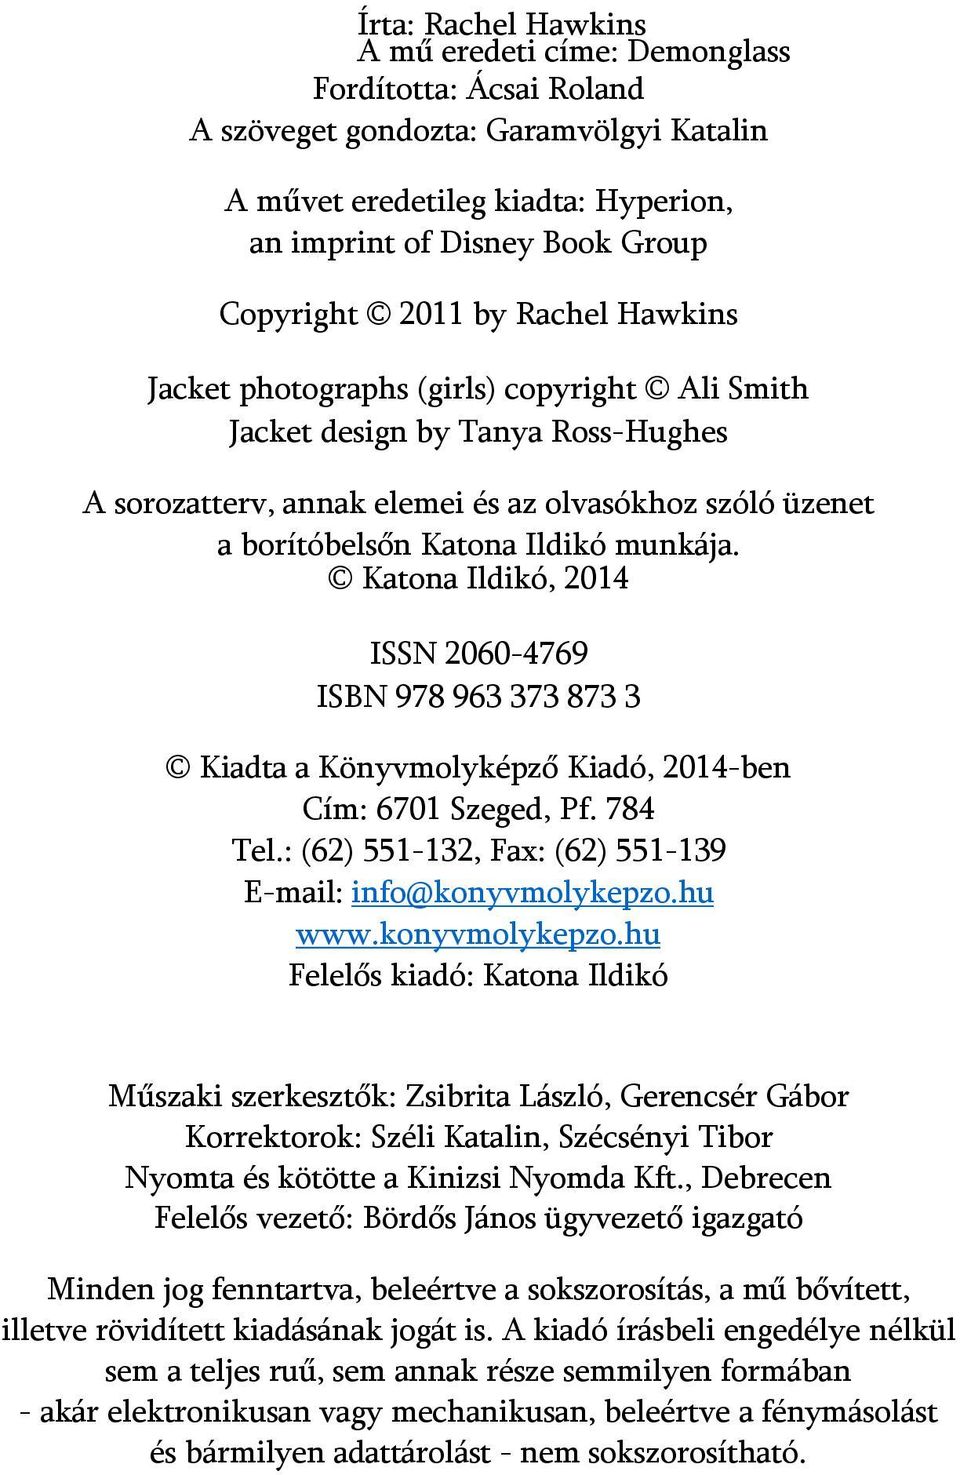 Katona Ildikó, 2014 ISSN 2060-4769 ISBN 978 963 373 873 3 Kiadta a Könyvmolyképző Kiadó, 2014-ben Cím: 6701 Szeged, Pf. 784 Tel.: (62) 551-132, Fax: (62) 551-139 E-mail: info@konyvmolykepzo.hu www.